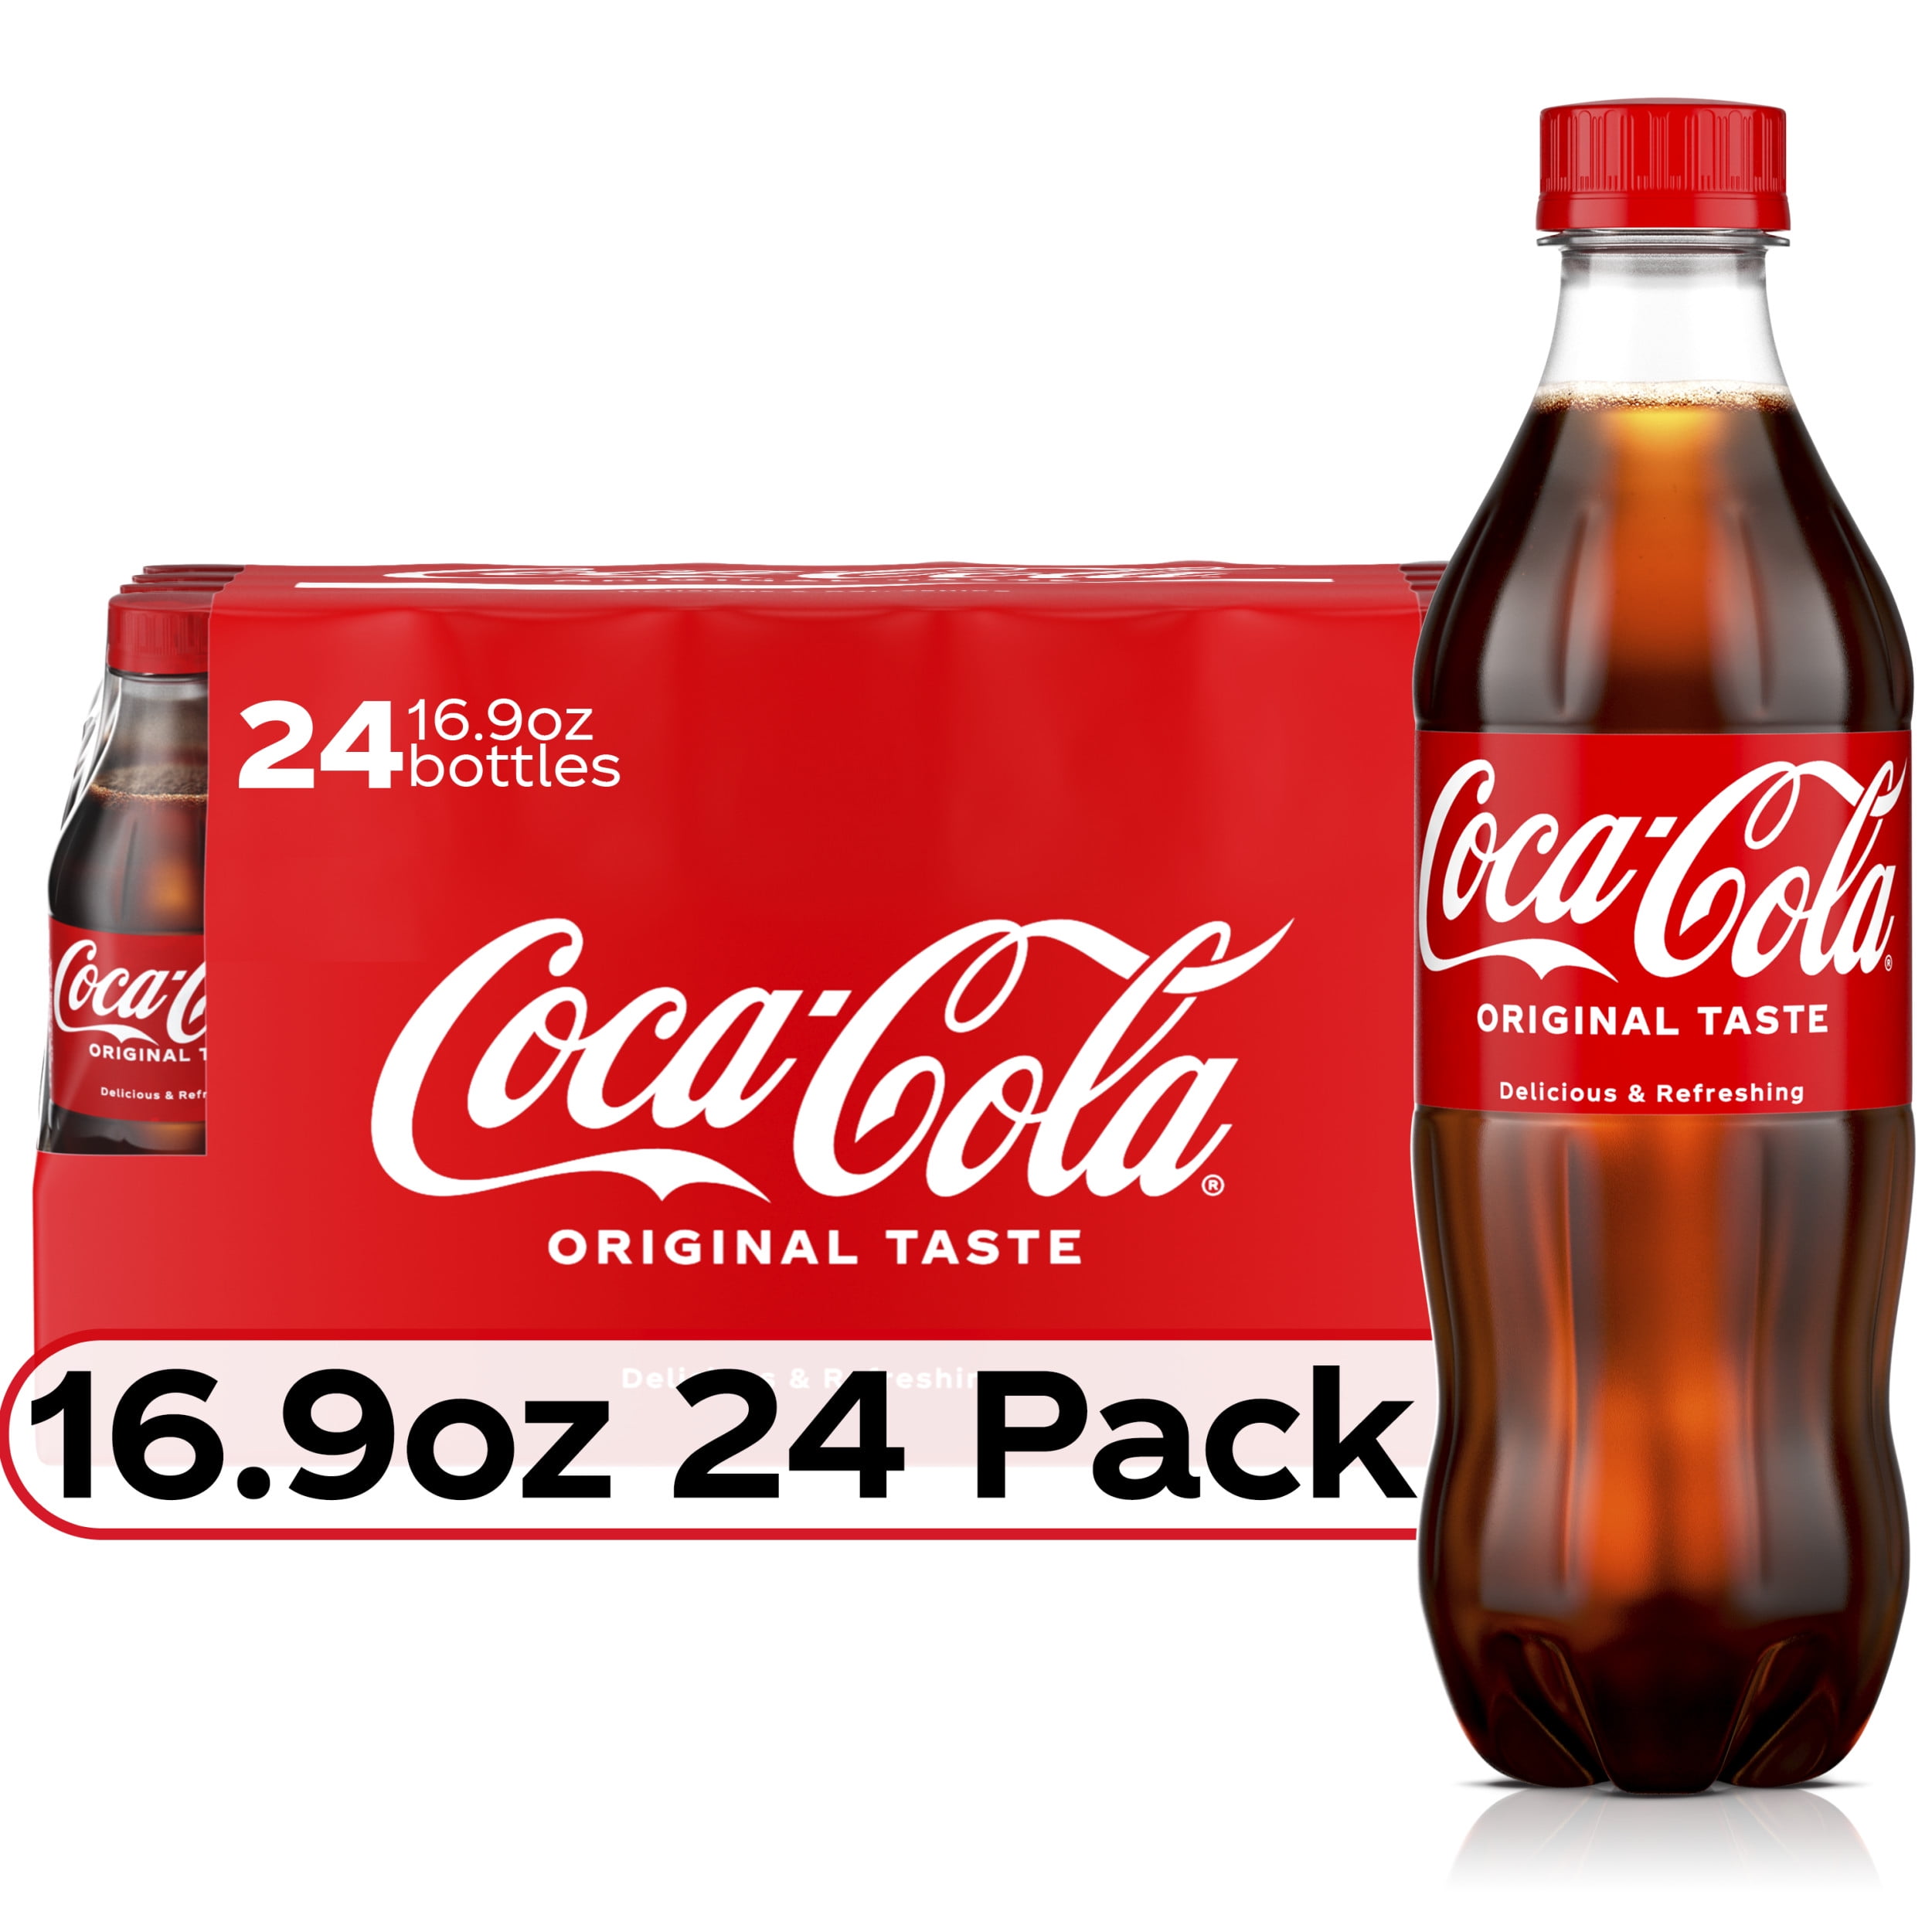 Quanto custa uma Coca-cola em ienes?